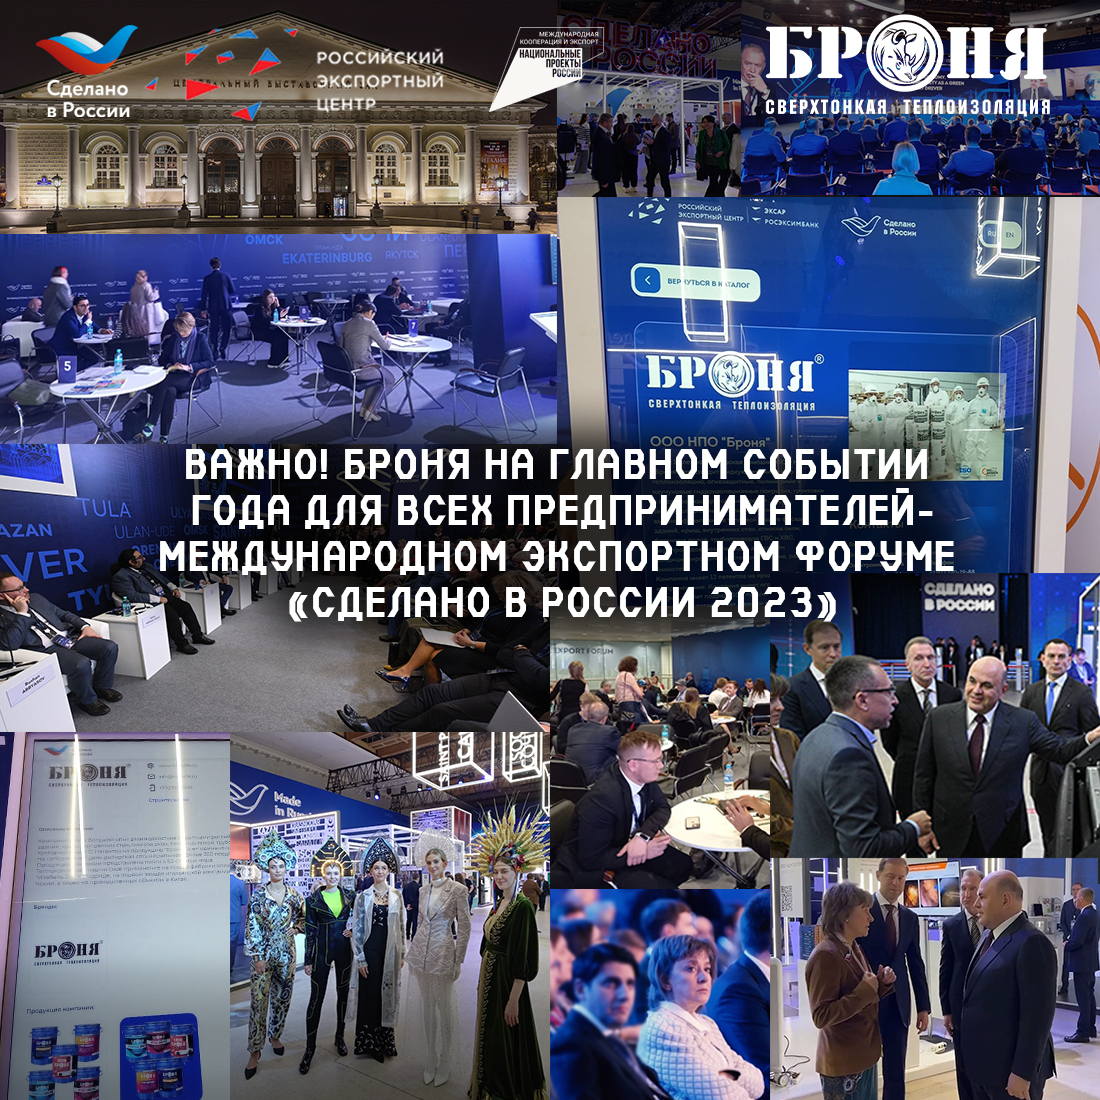 Важно! Броня На главном событии года для всех предпринимателей-Международном экспортном форуме «Сделано в России 2023» (фото)